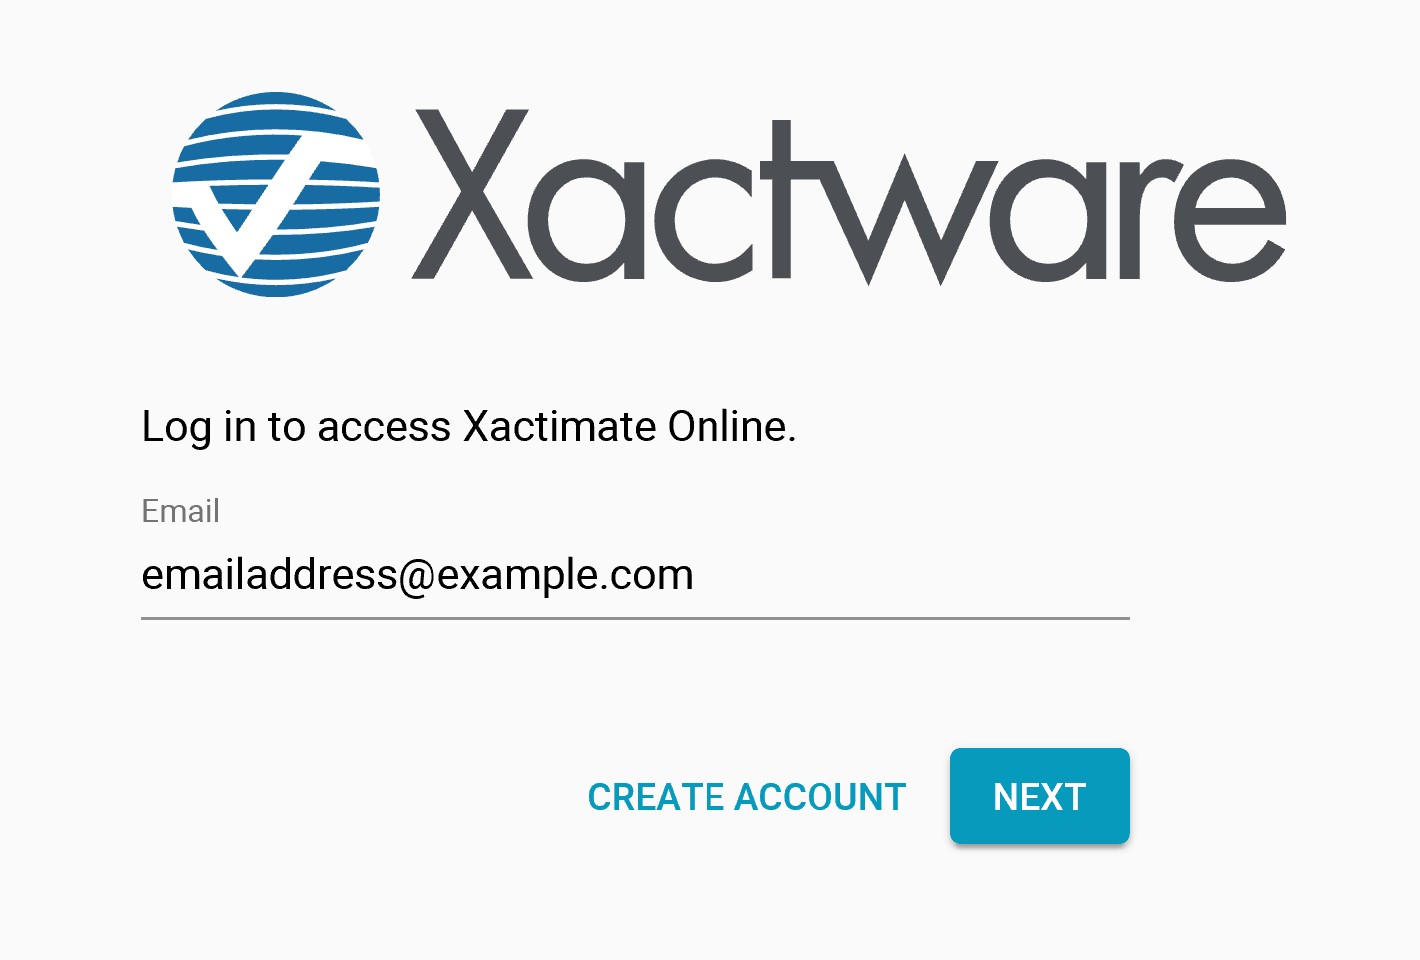 Xactware ID in Xactimate online (Silverlight) - Xactware help